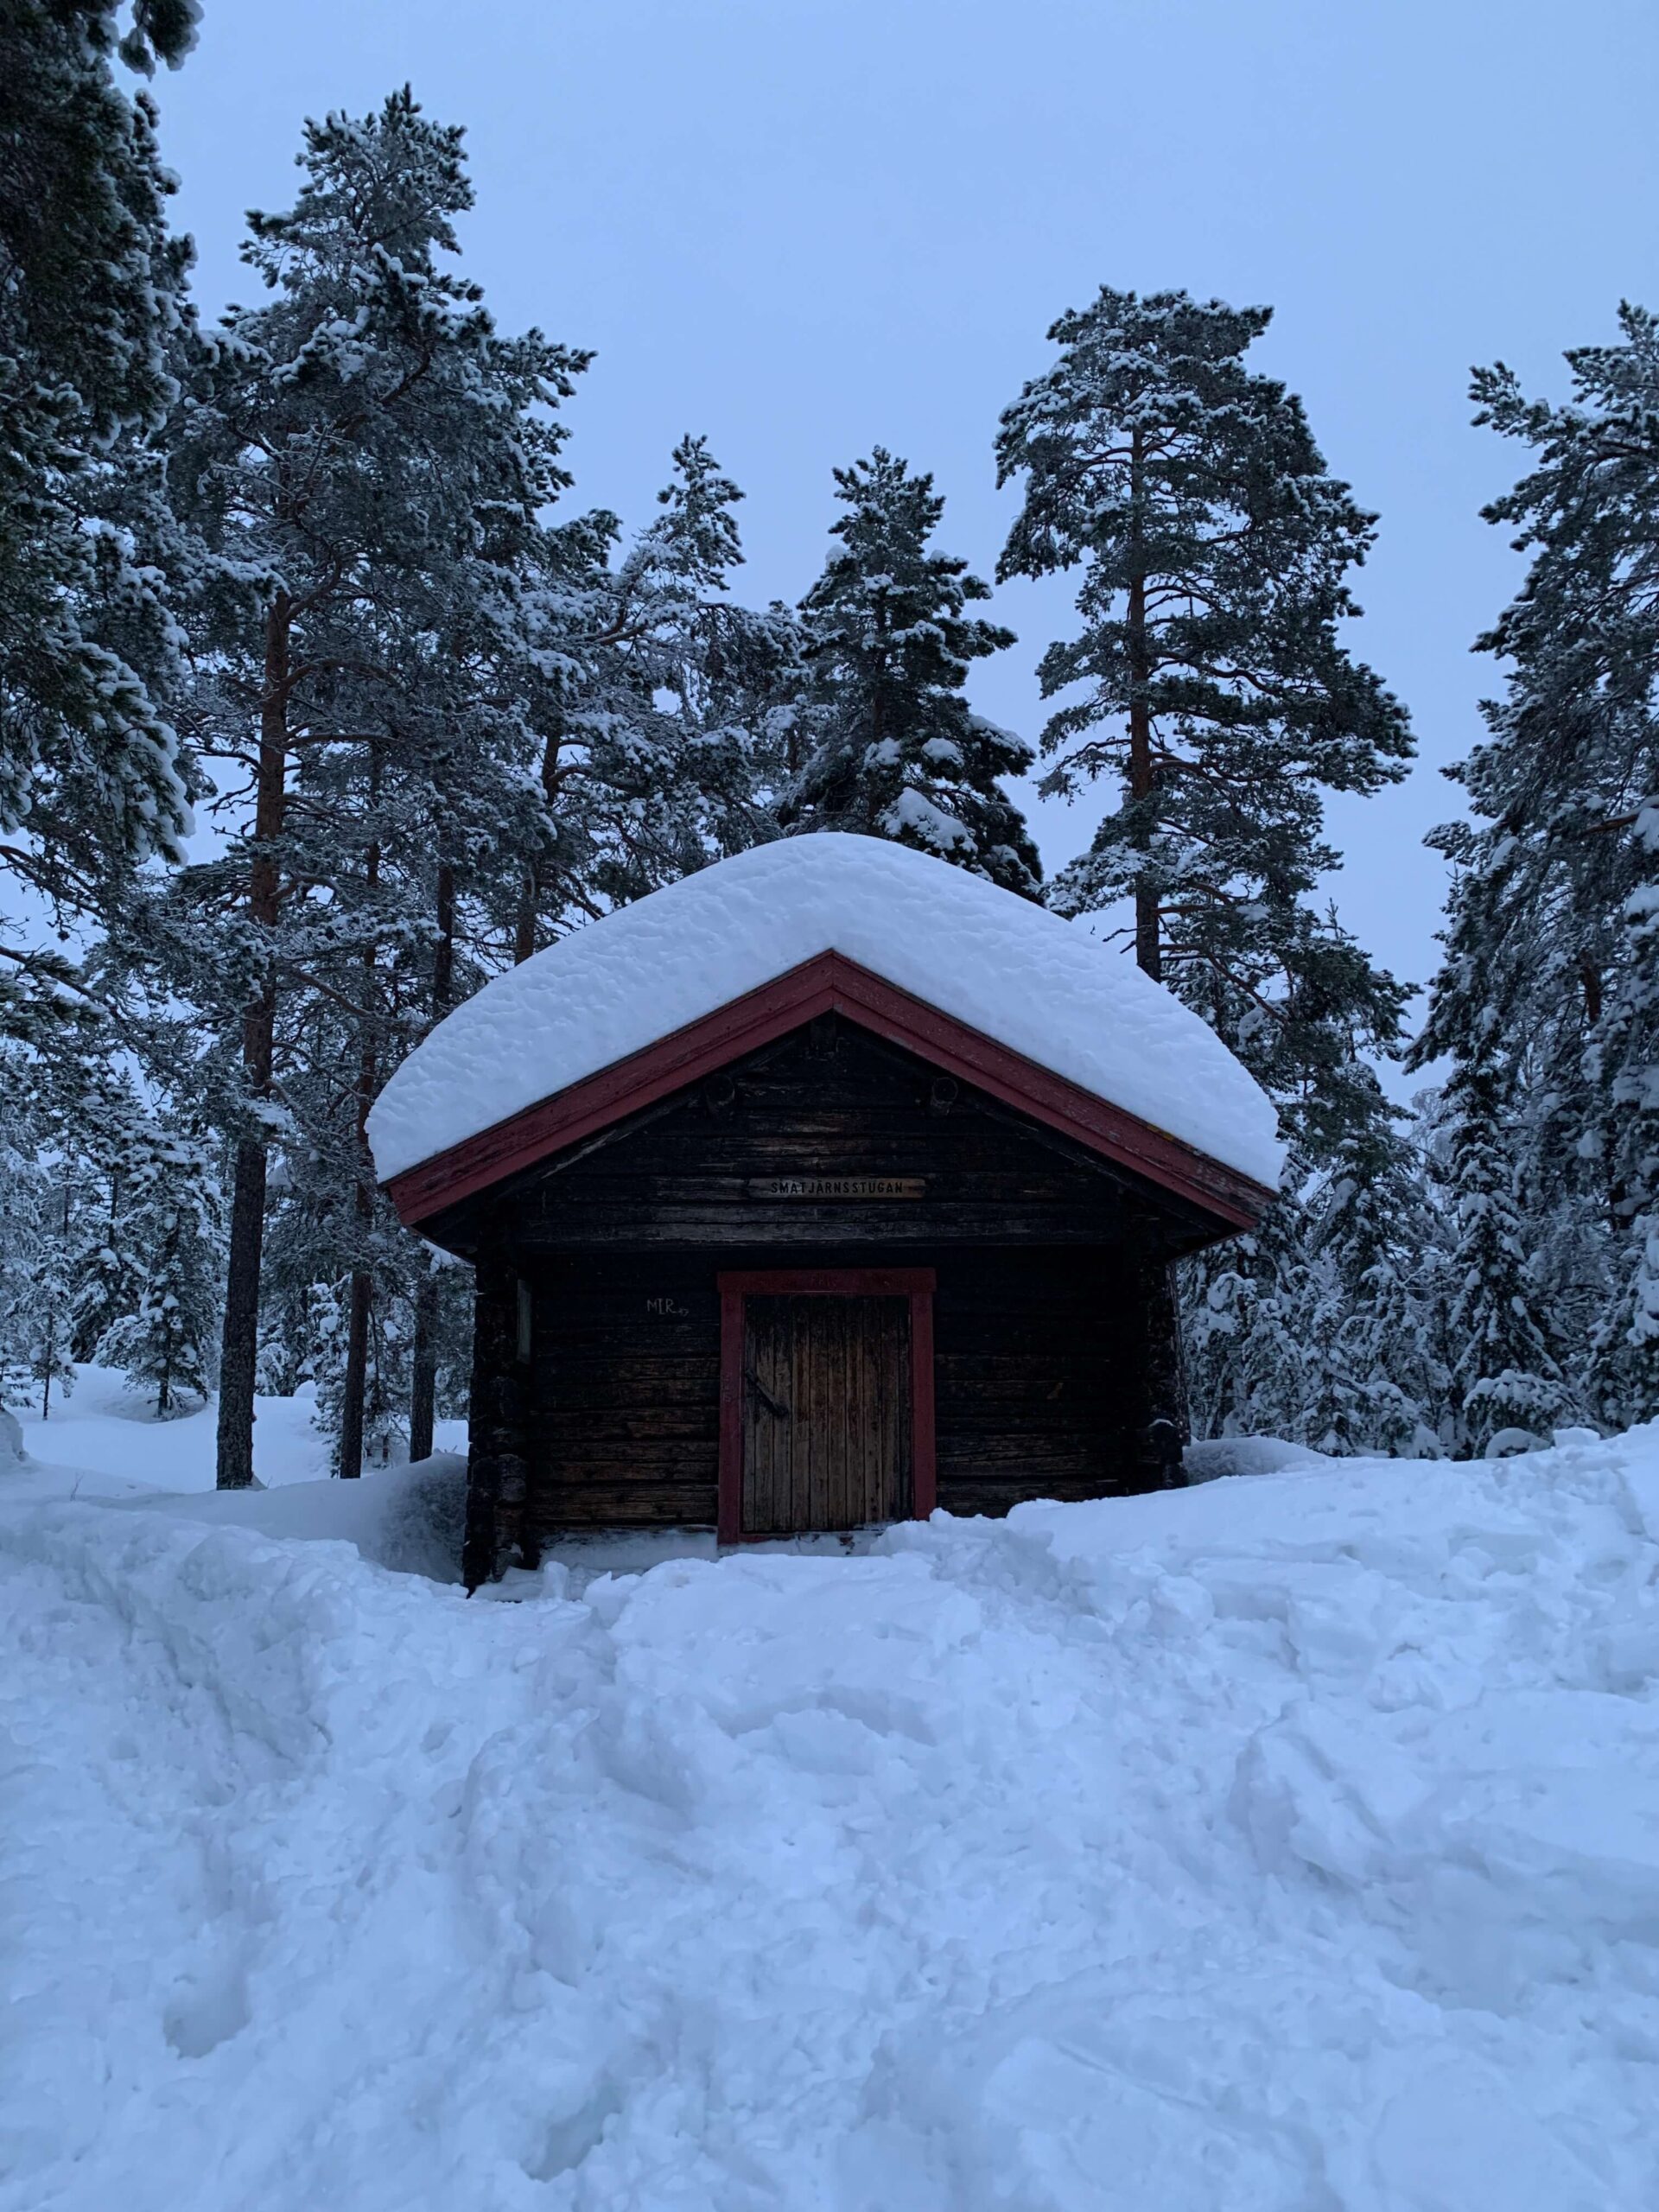 Zimowy spacer na Wysokim Wybrzeżu w Szwecji